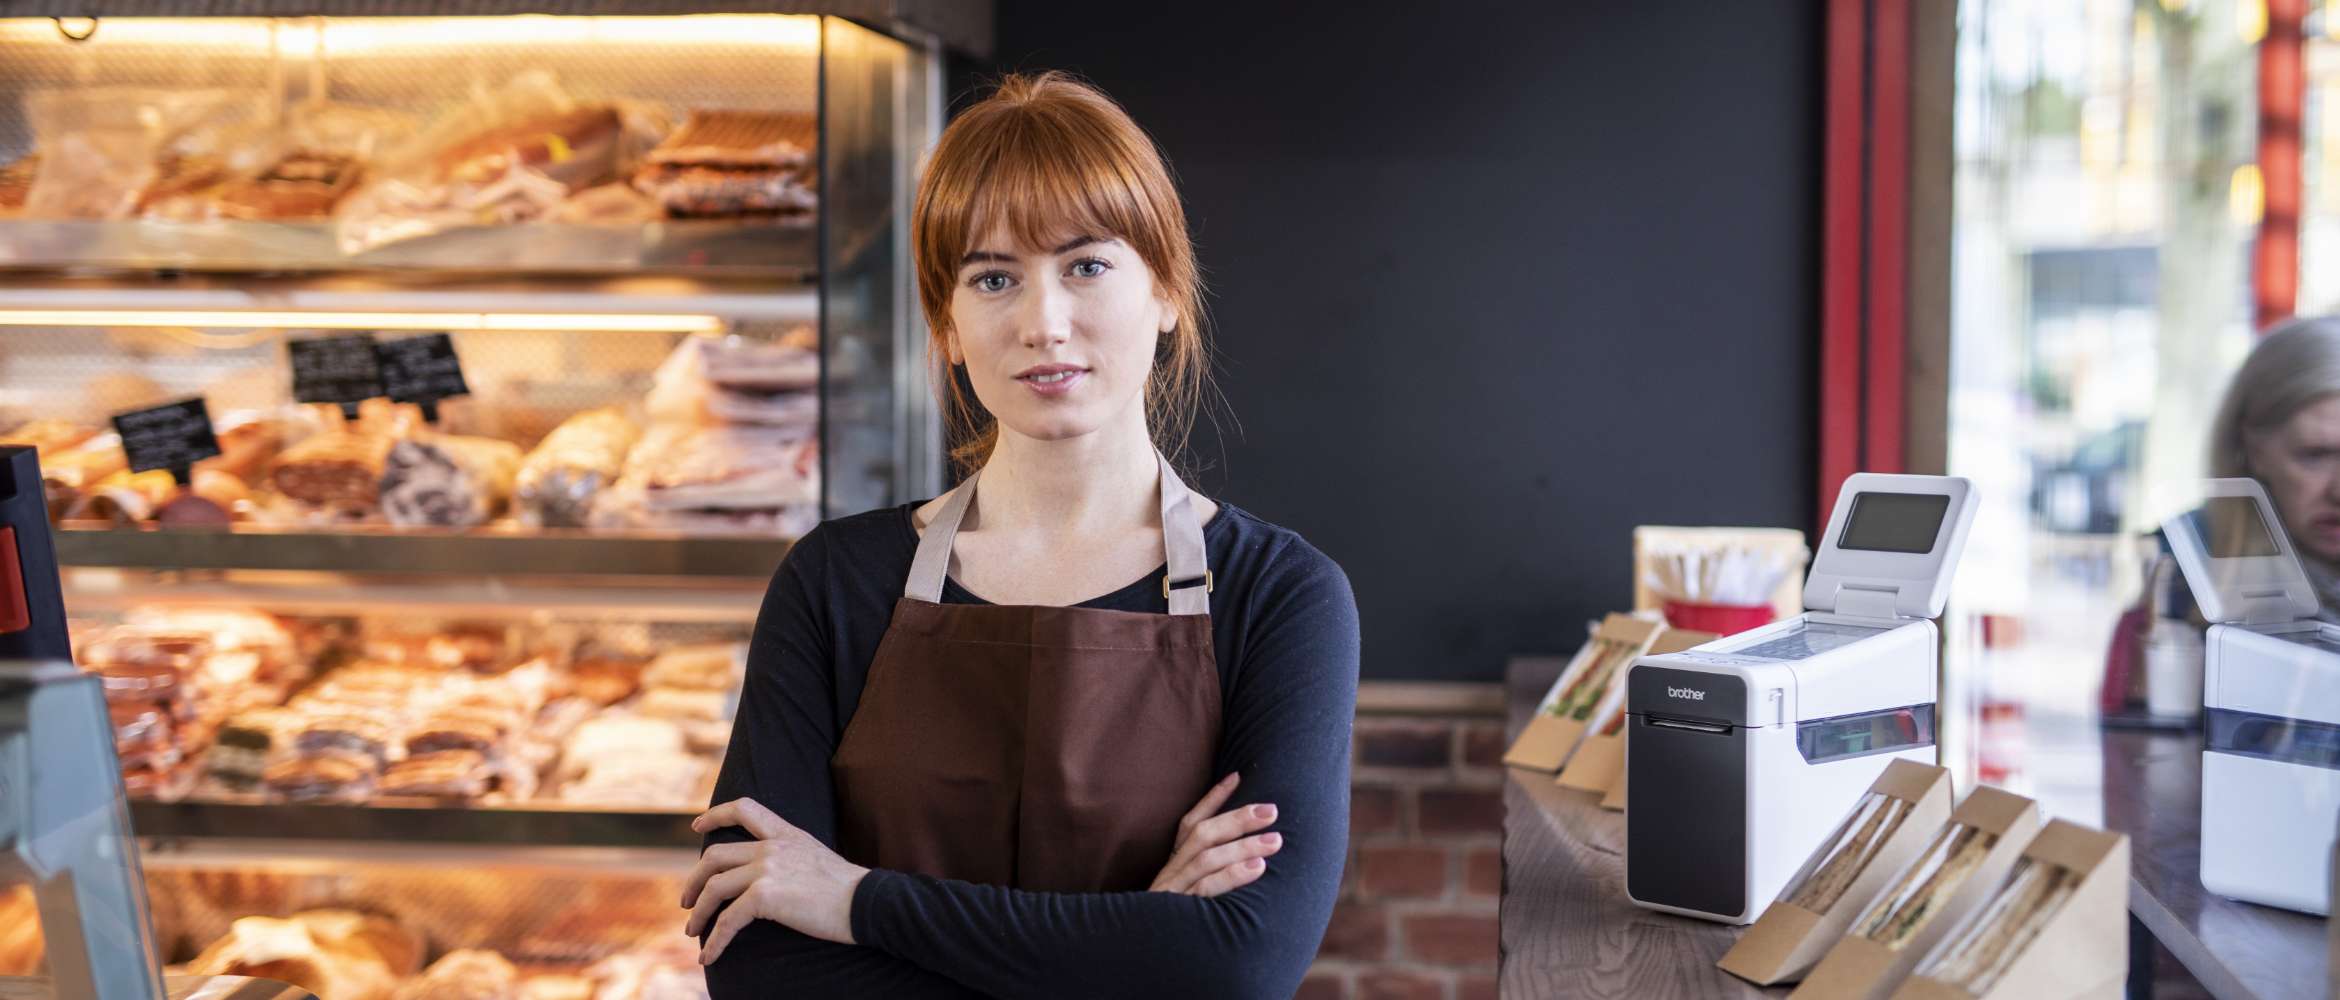 Een vrouwelijk personeelslid in een bakkerij staat met de armen over elkaar naar de camera te kijken.